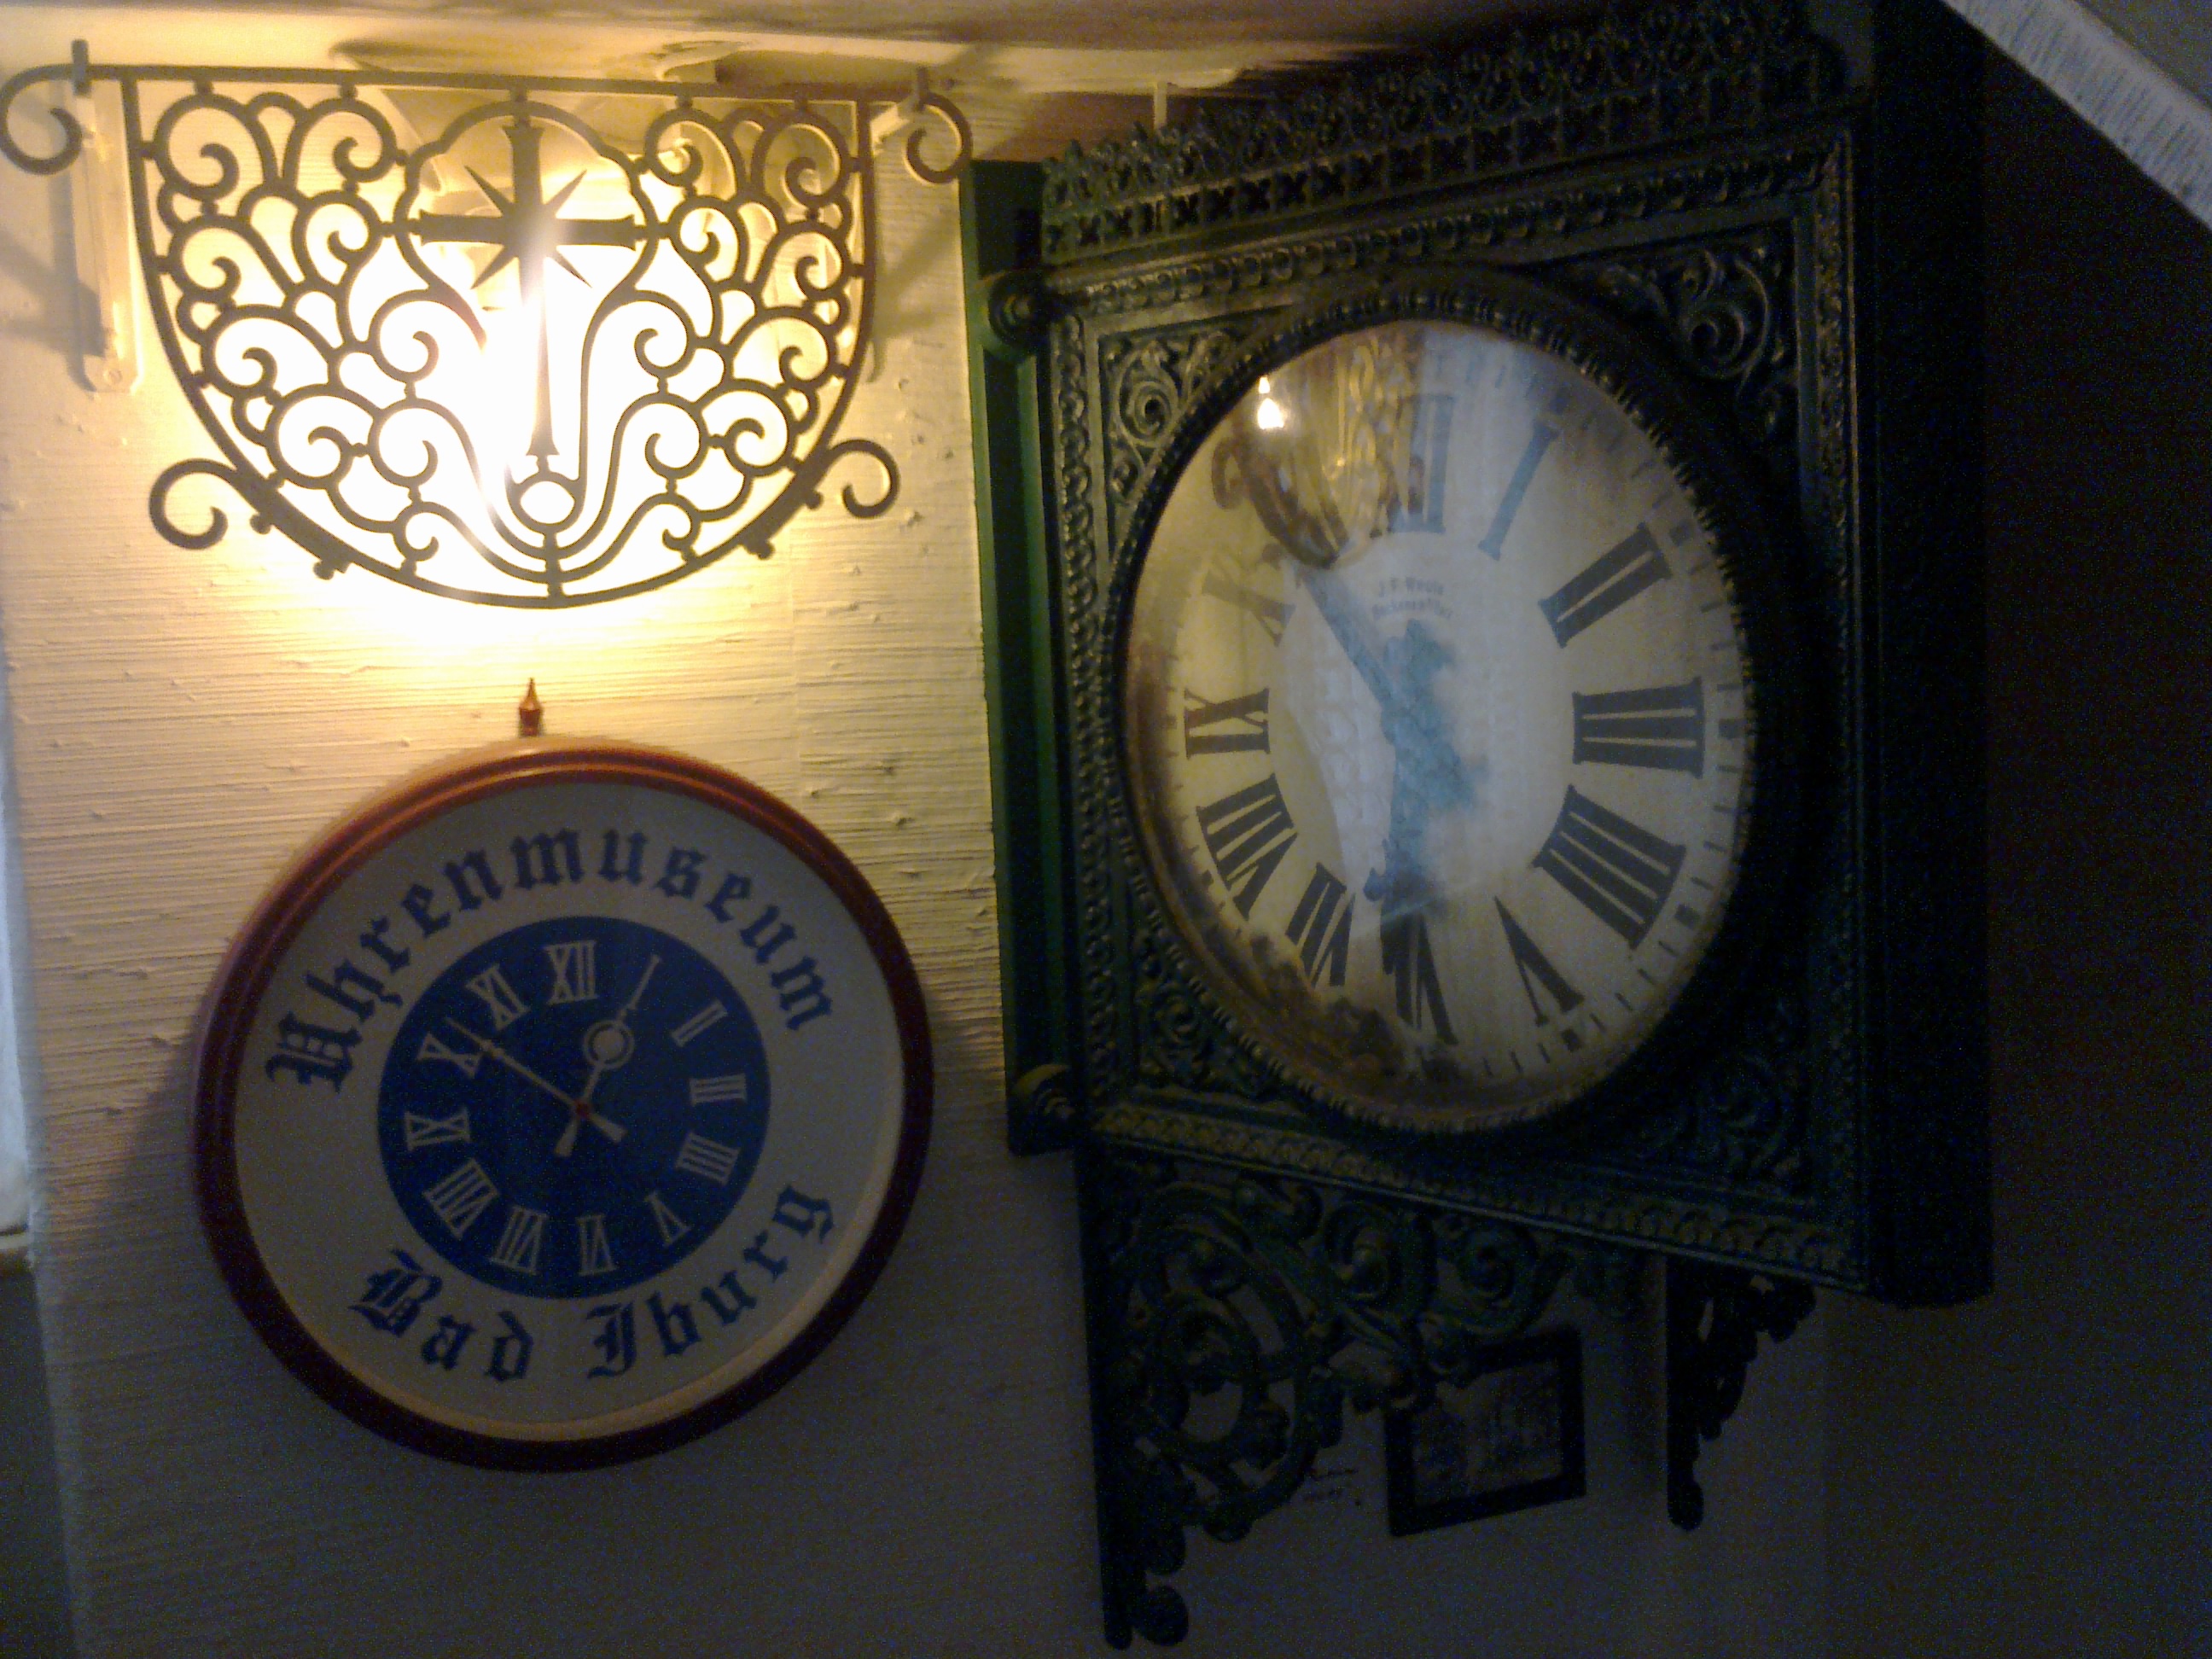 Uhrenmuseum Bad Iburg, über 800 Uhren können bestaunt werden.